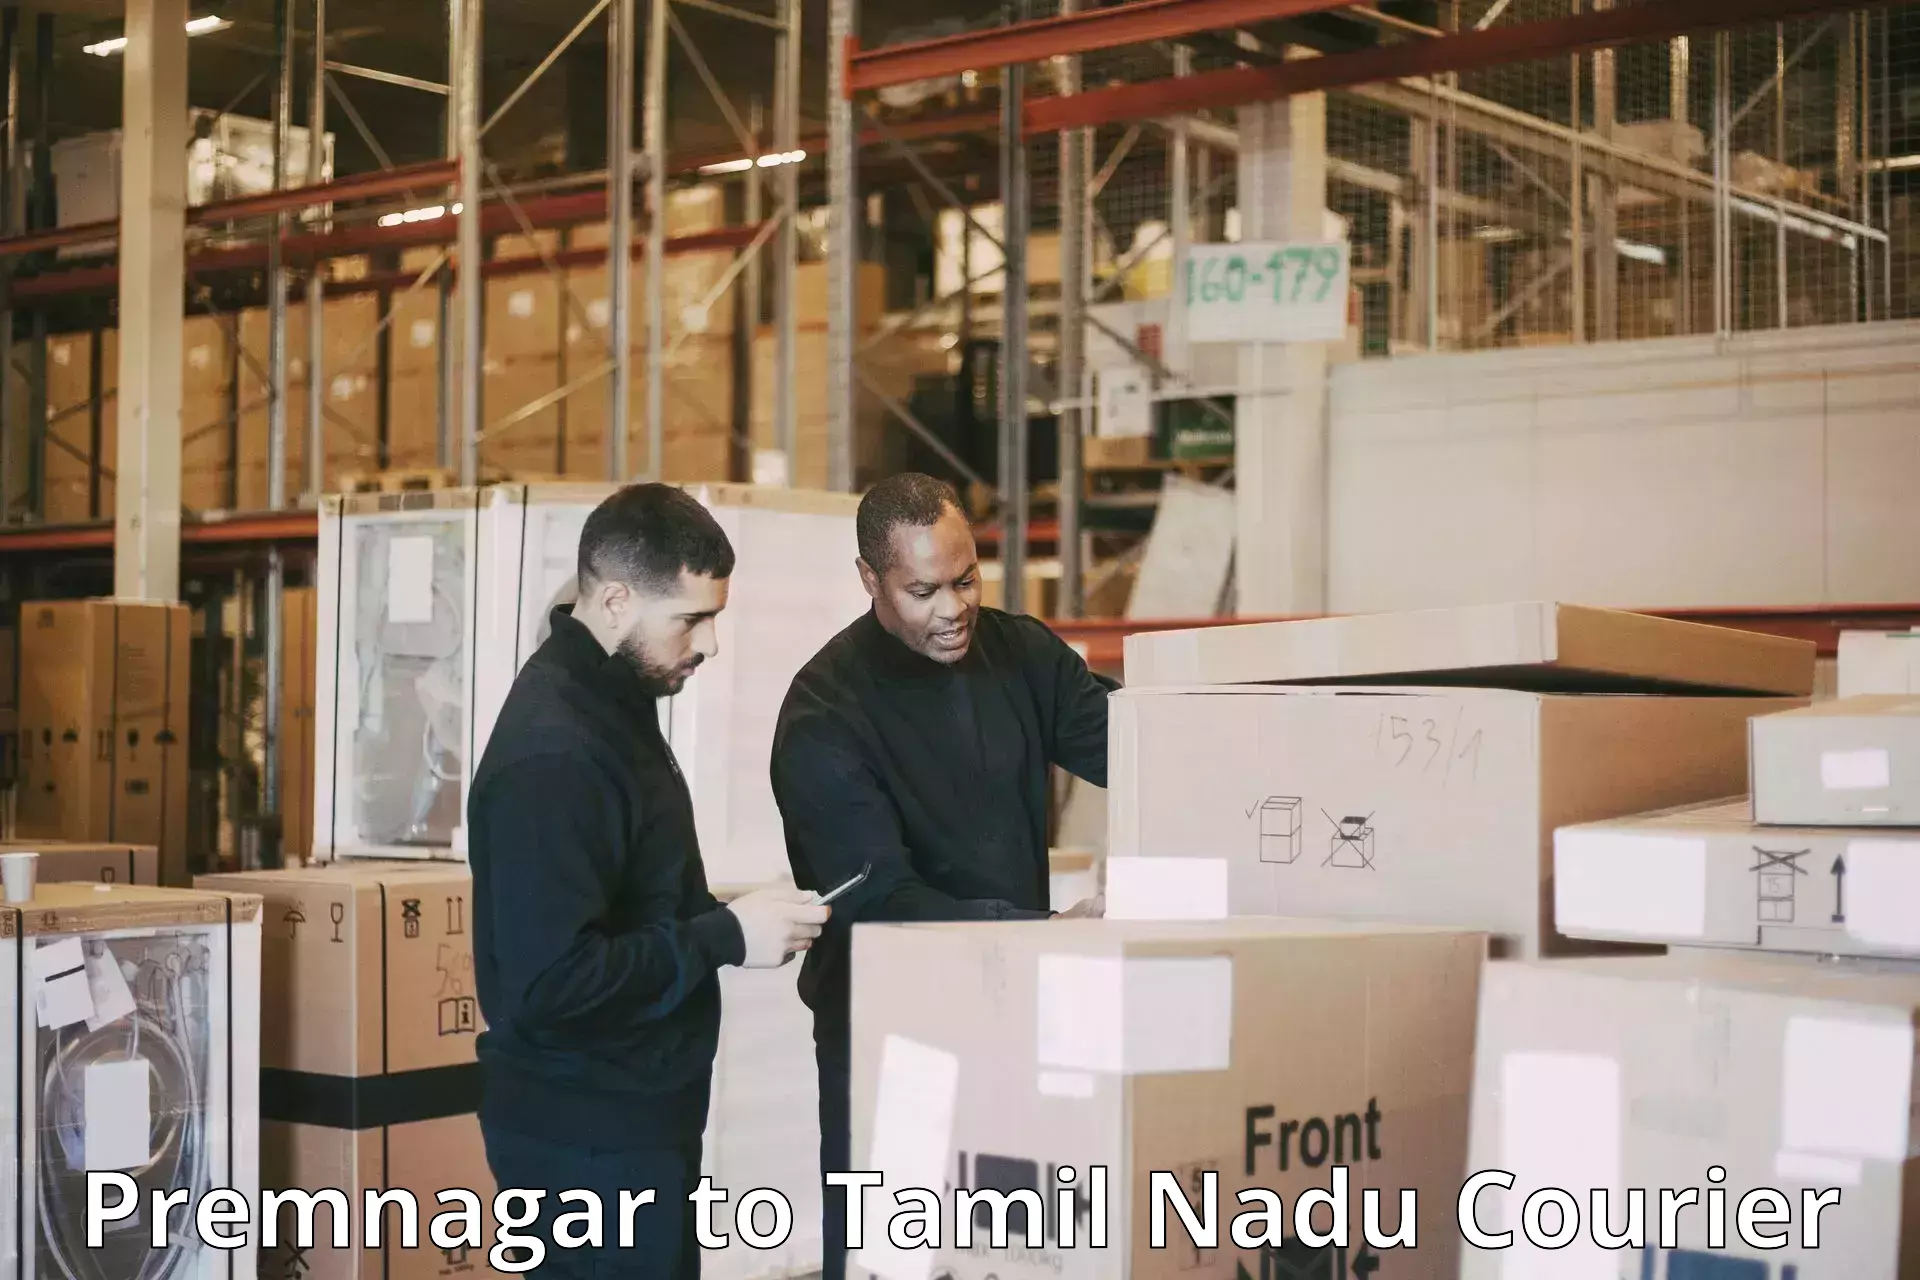 Cash on delivery service Premnagar to The Gandhigram Rural Institute